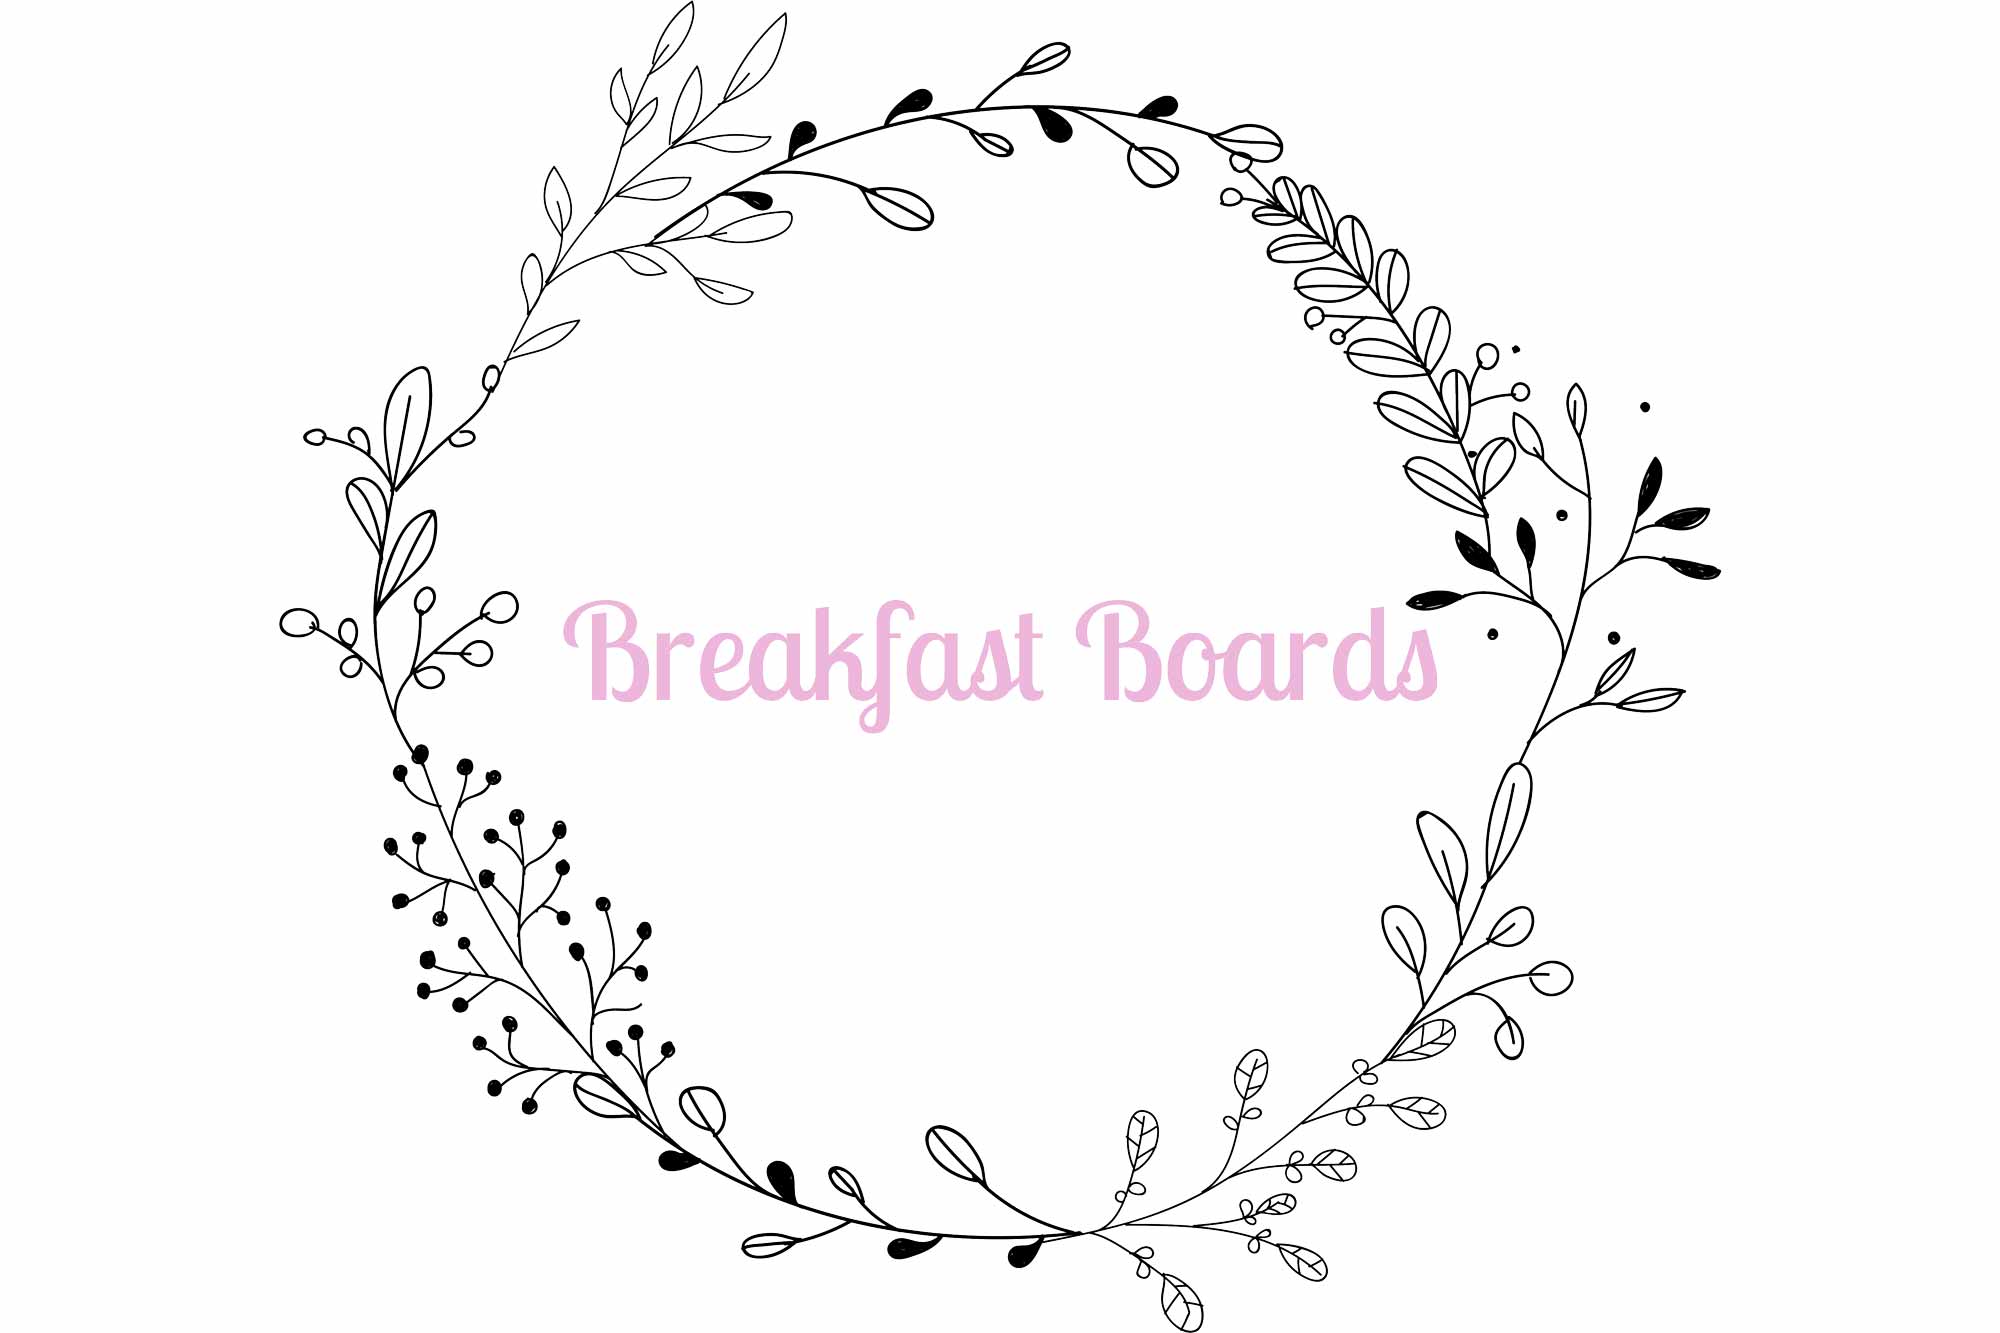 Breakfast Boards